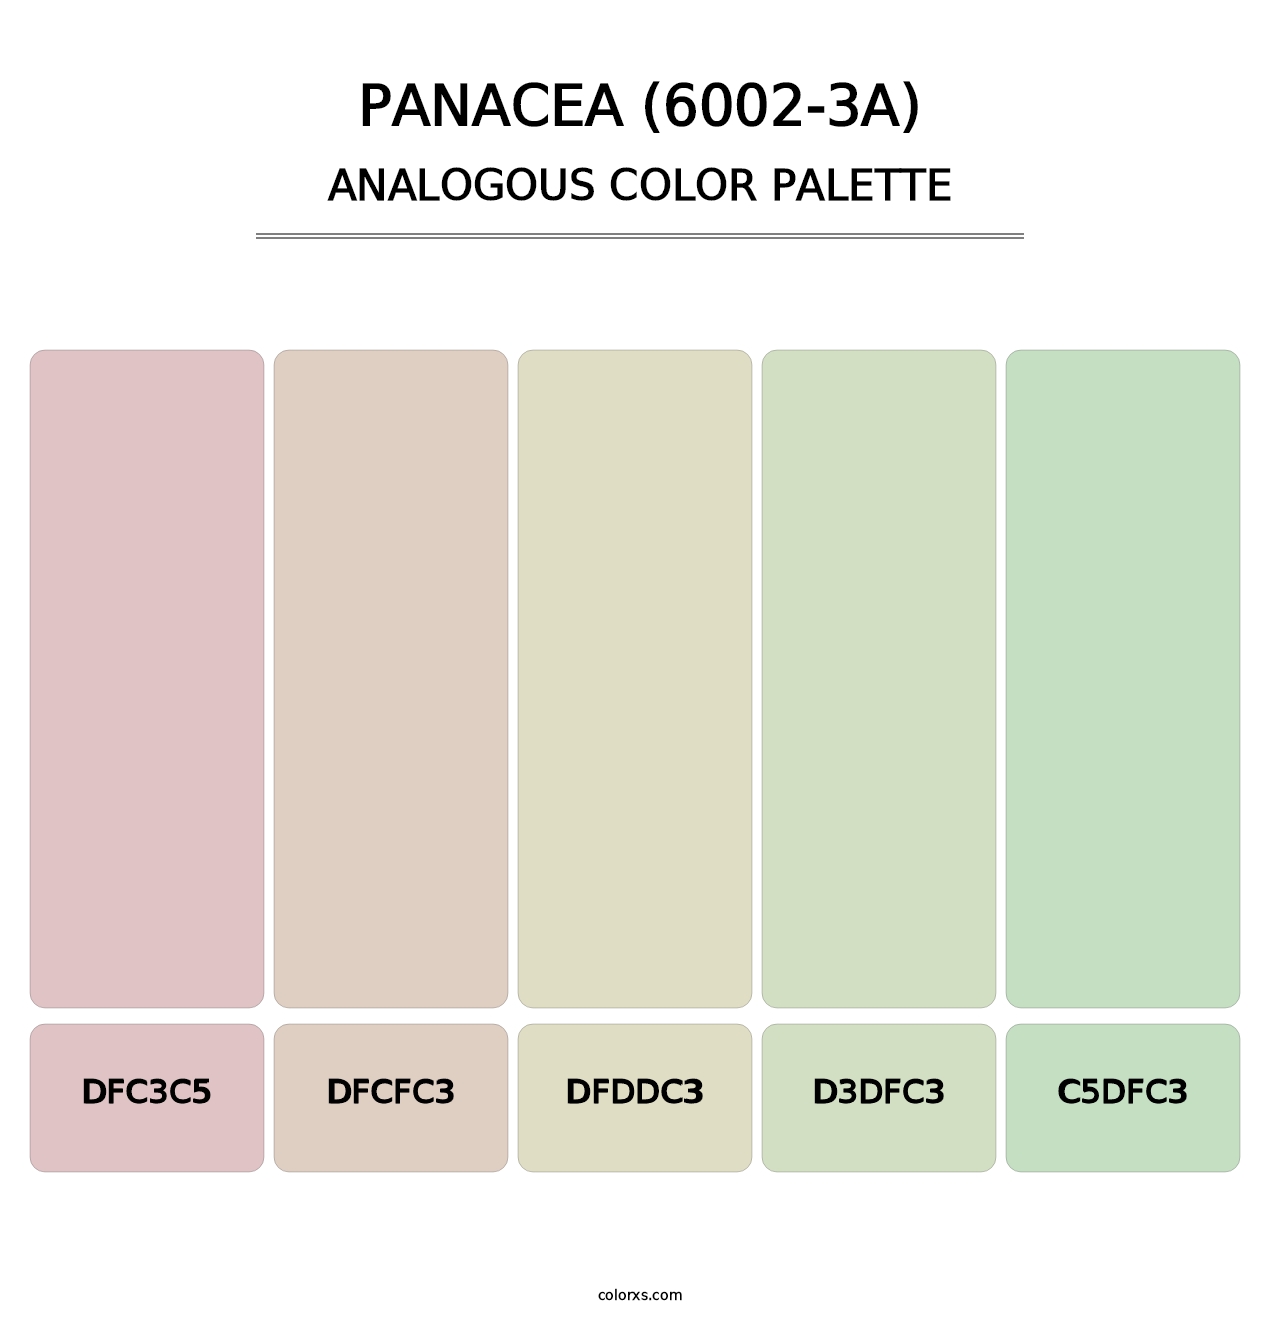 Panacea (6002-3A) - Analogous Color Palette